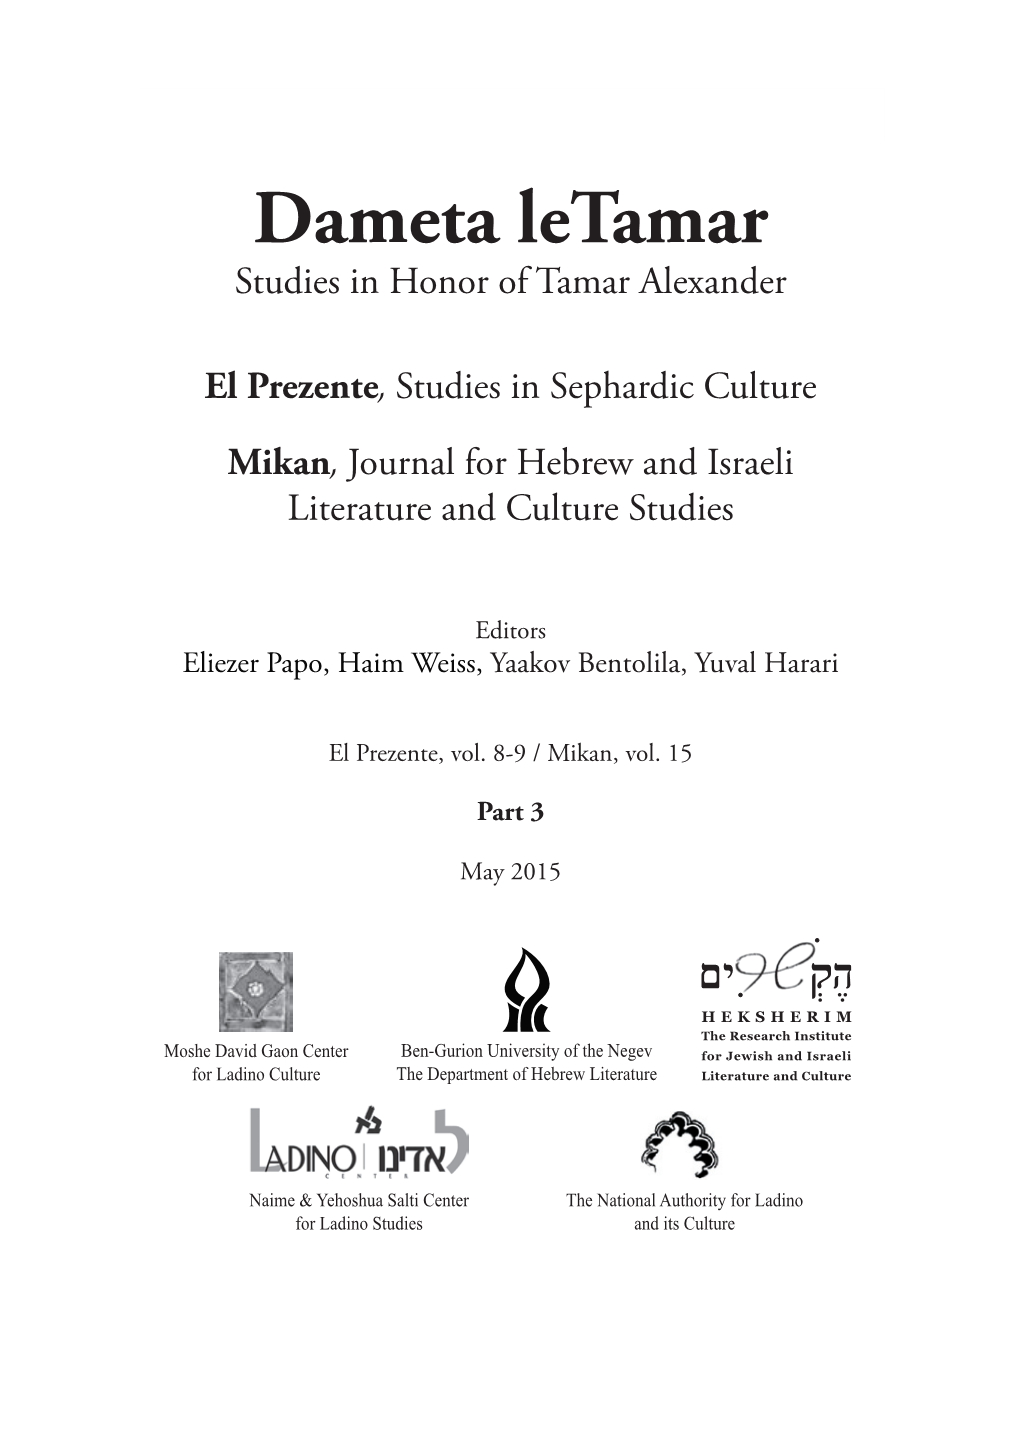 Dameta Letamar Studies in Honor of Tamar Alexander